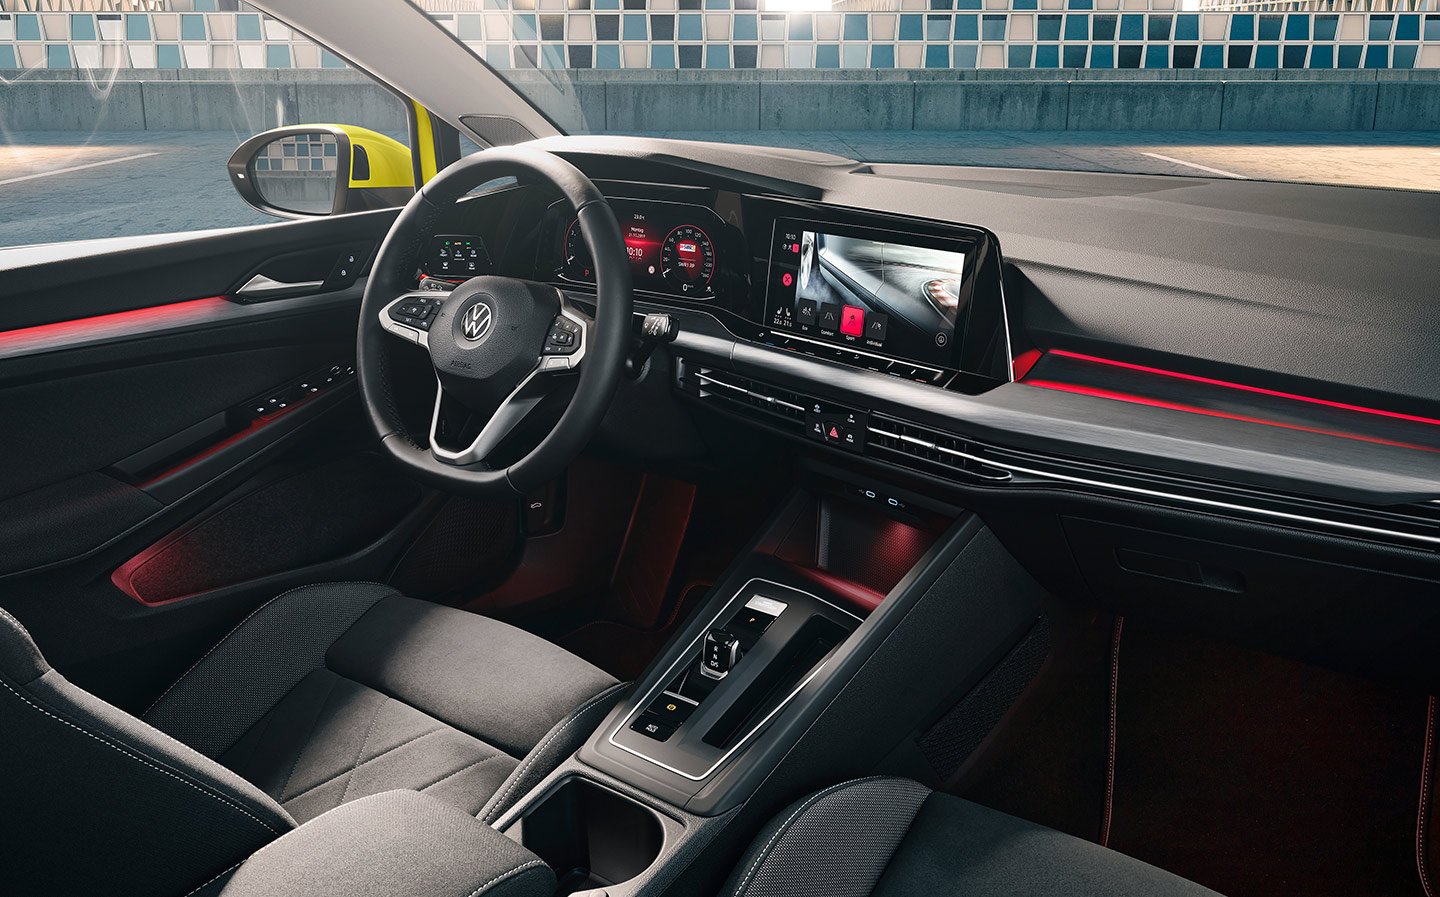 Volkswagen Golf interior - Cockpit